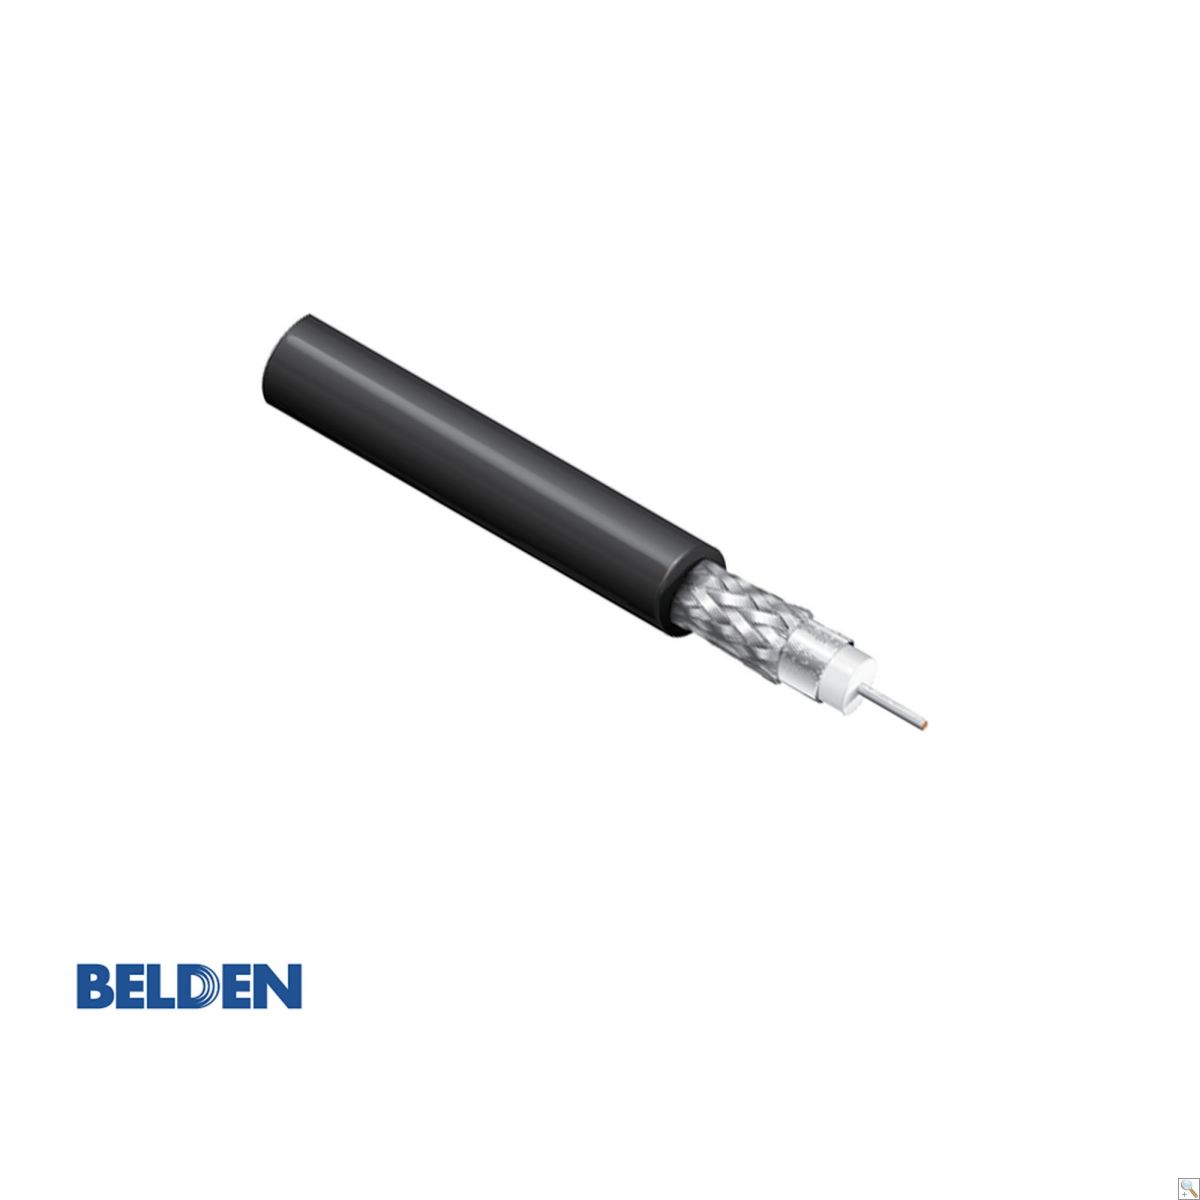 Belden 4855R - Cut Length